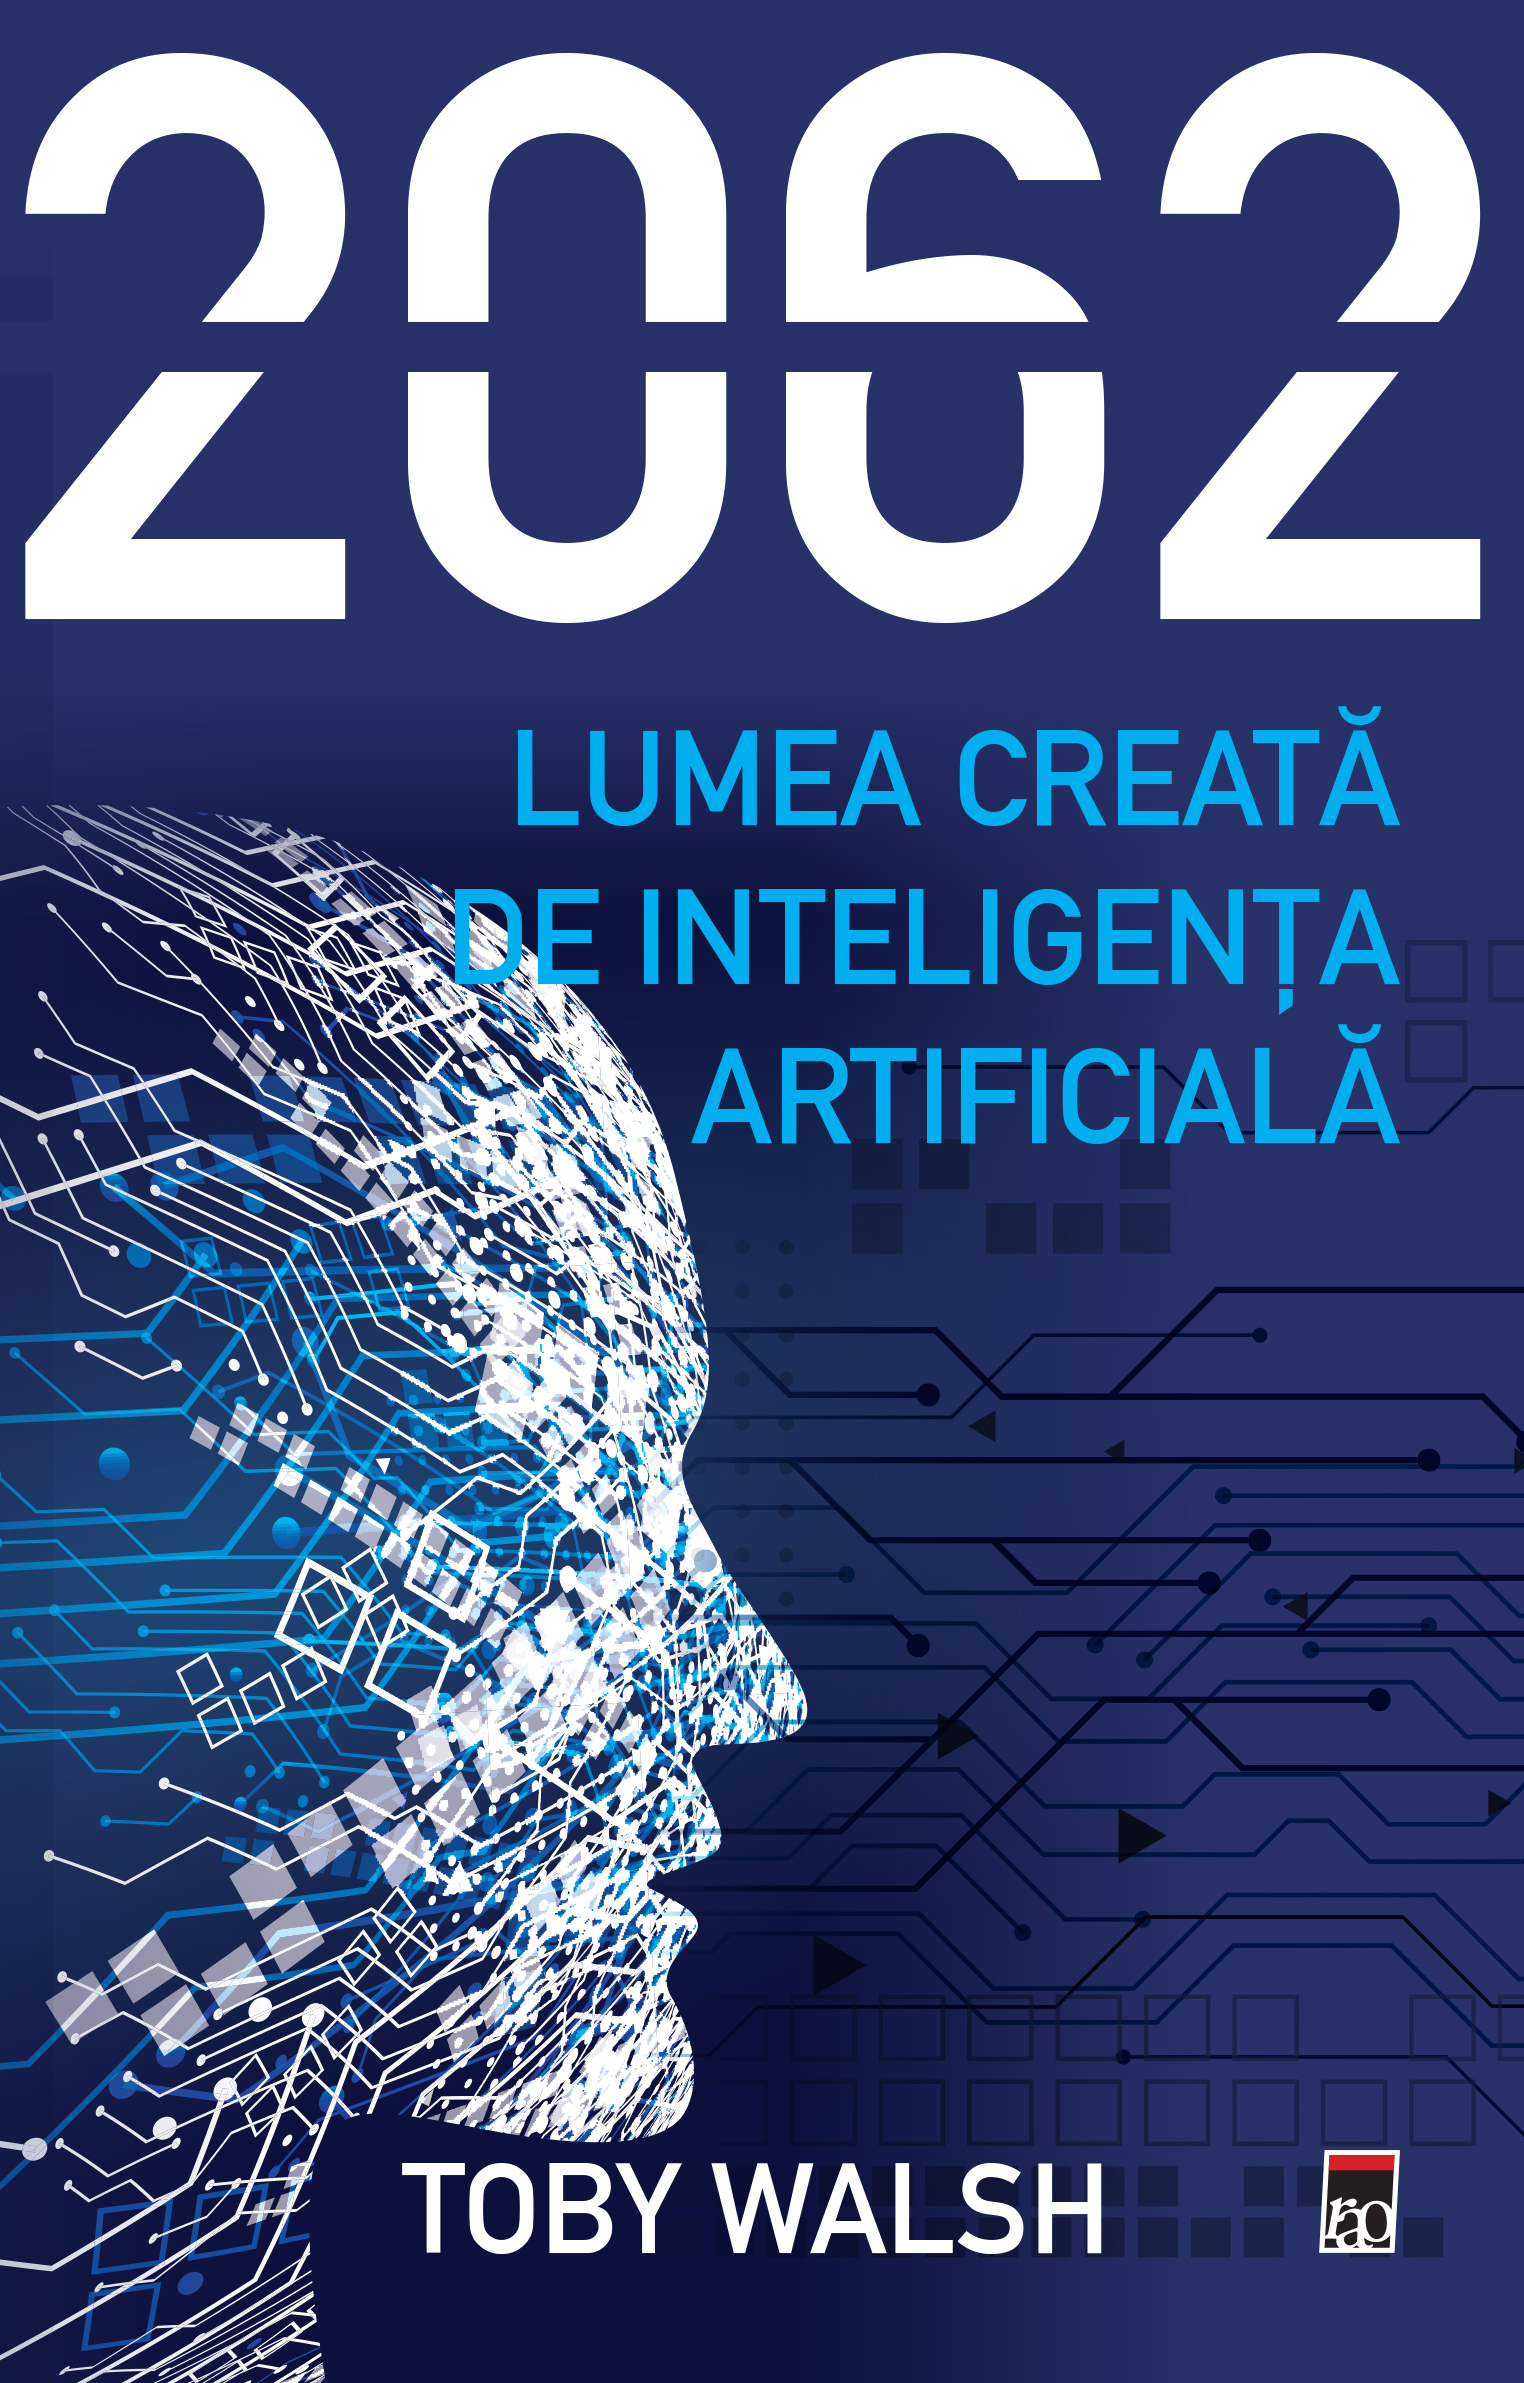 2062. Lumea creata de inteligenta artificiala | Toby Walsh de la carturesti imagine 2021